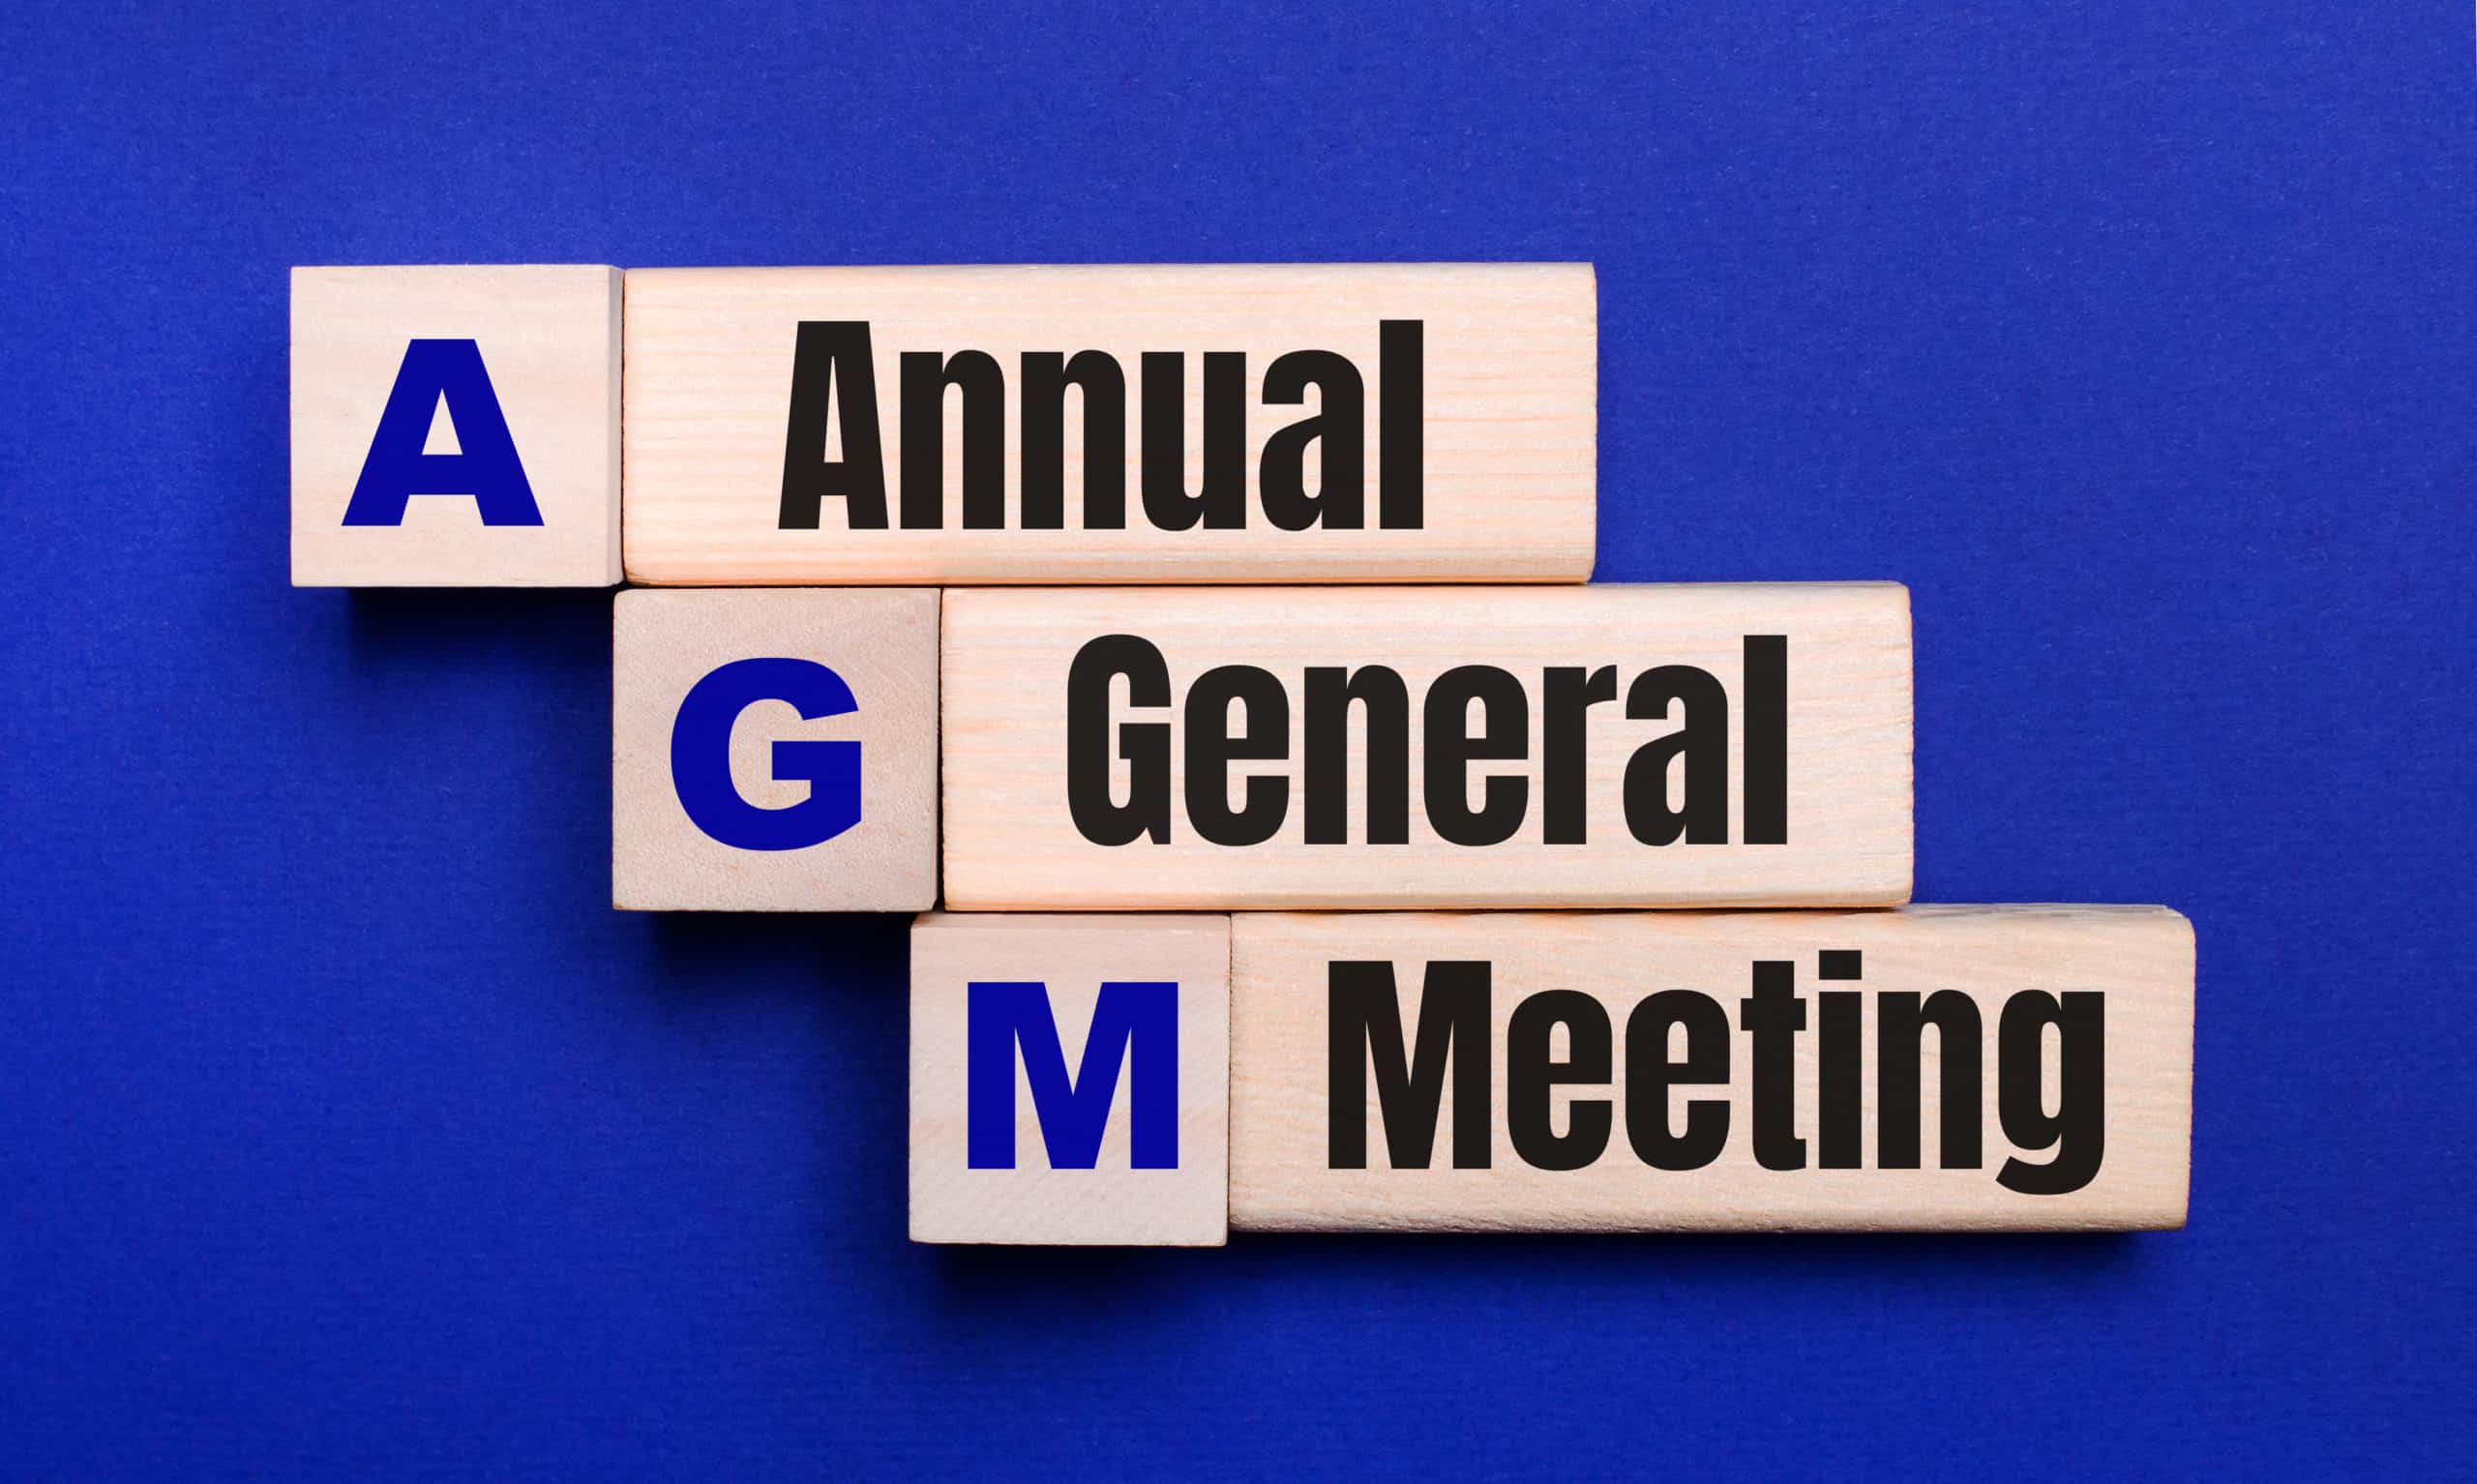 April 19th: Annual General Meeting